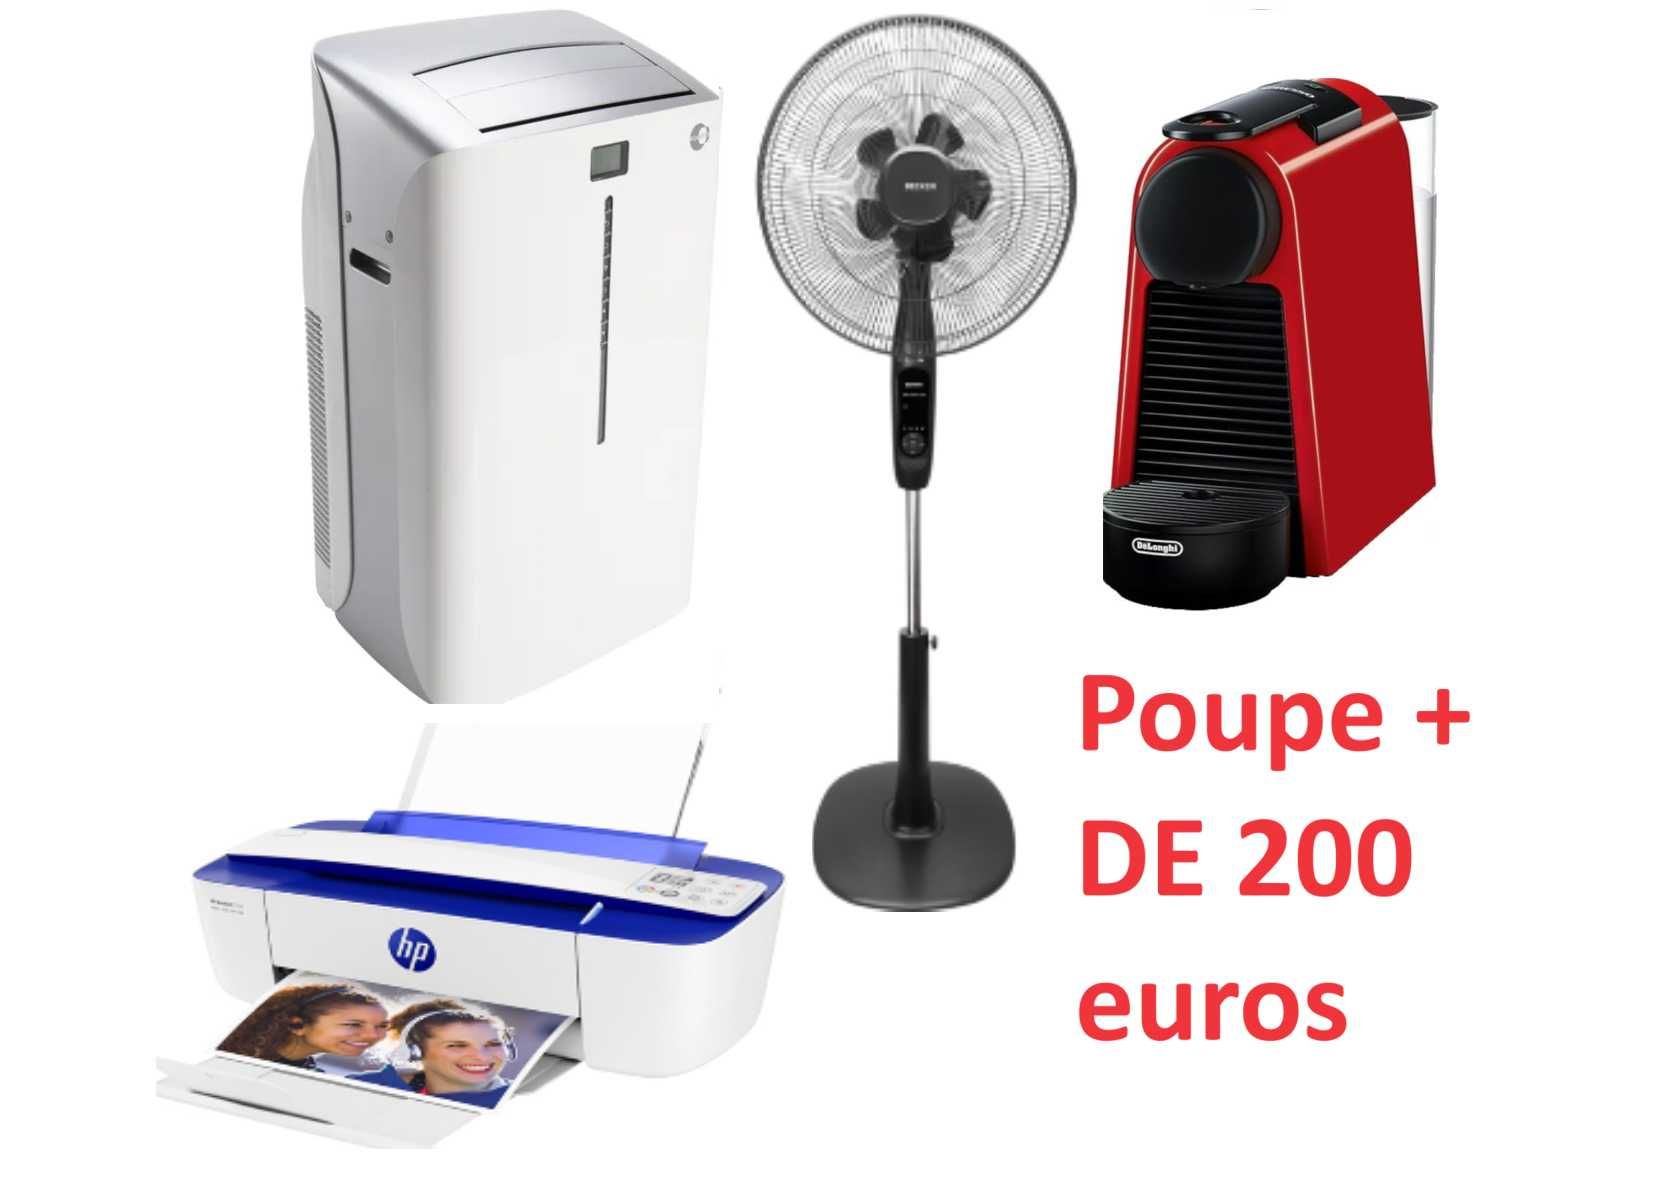 4 eletrodomésticos - Ar condicionado, máq.café, ventoinha, impressora